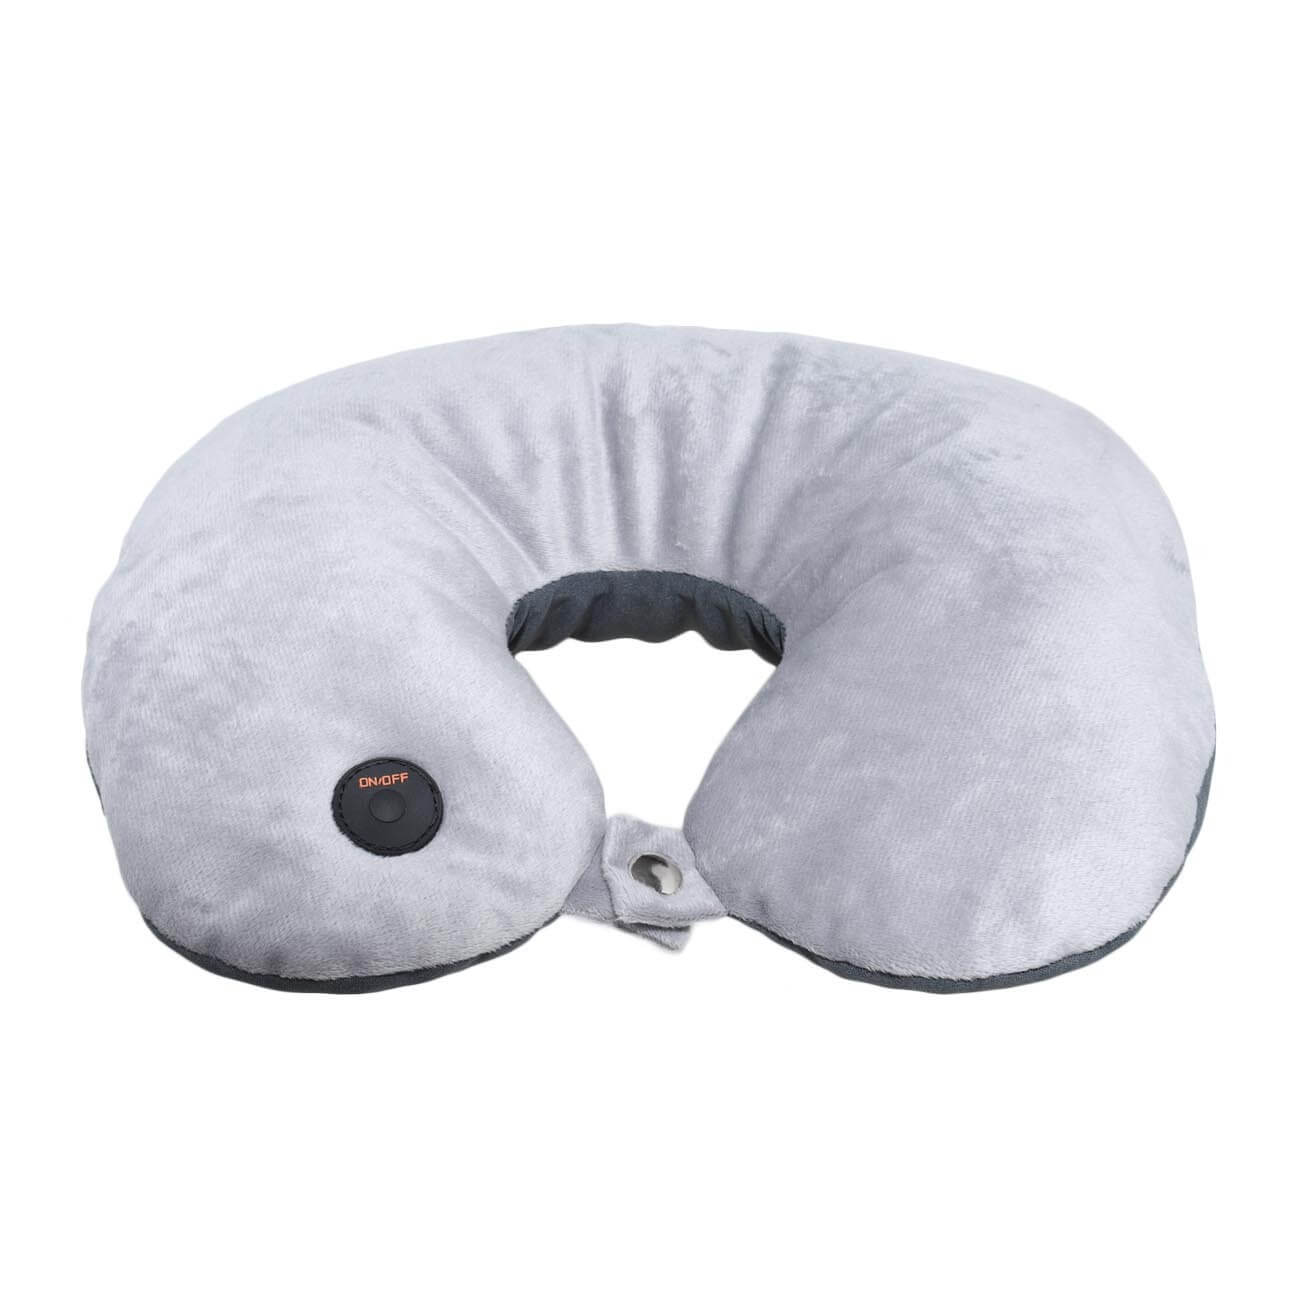 Подушка для путешествия, с вибрационным массажем, 2 в 1, полиэстер, серая, Relax - фото 1